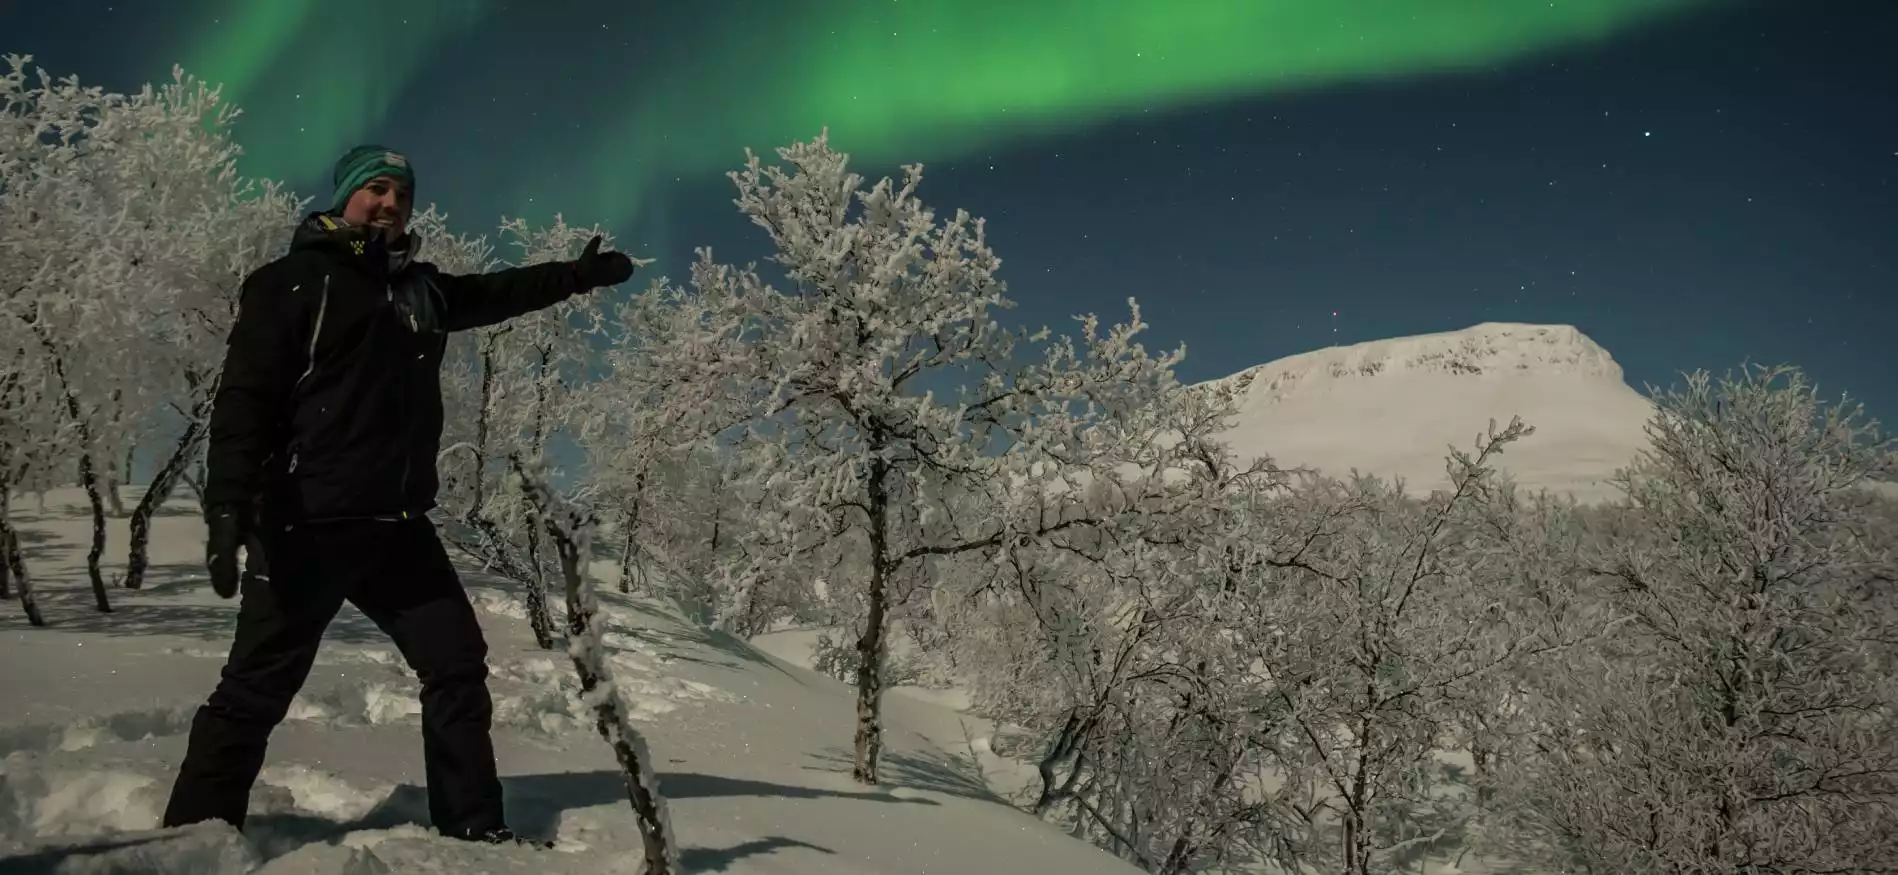 Noorderlichtreis Ontdek Lapland